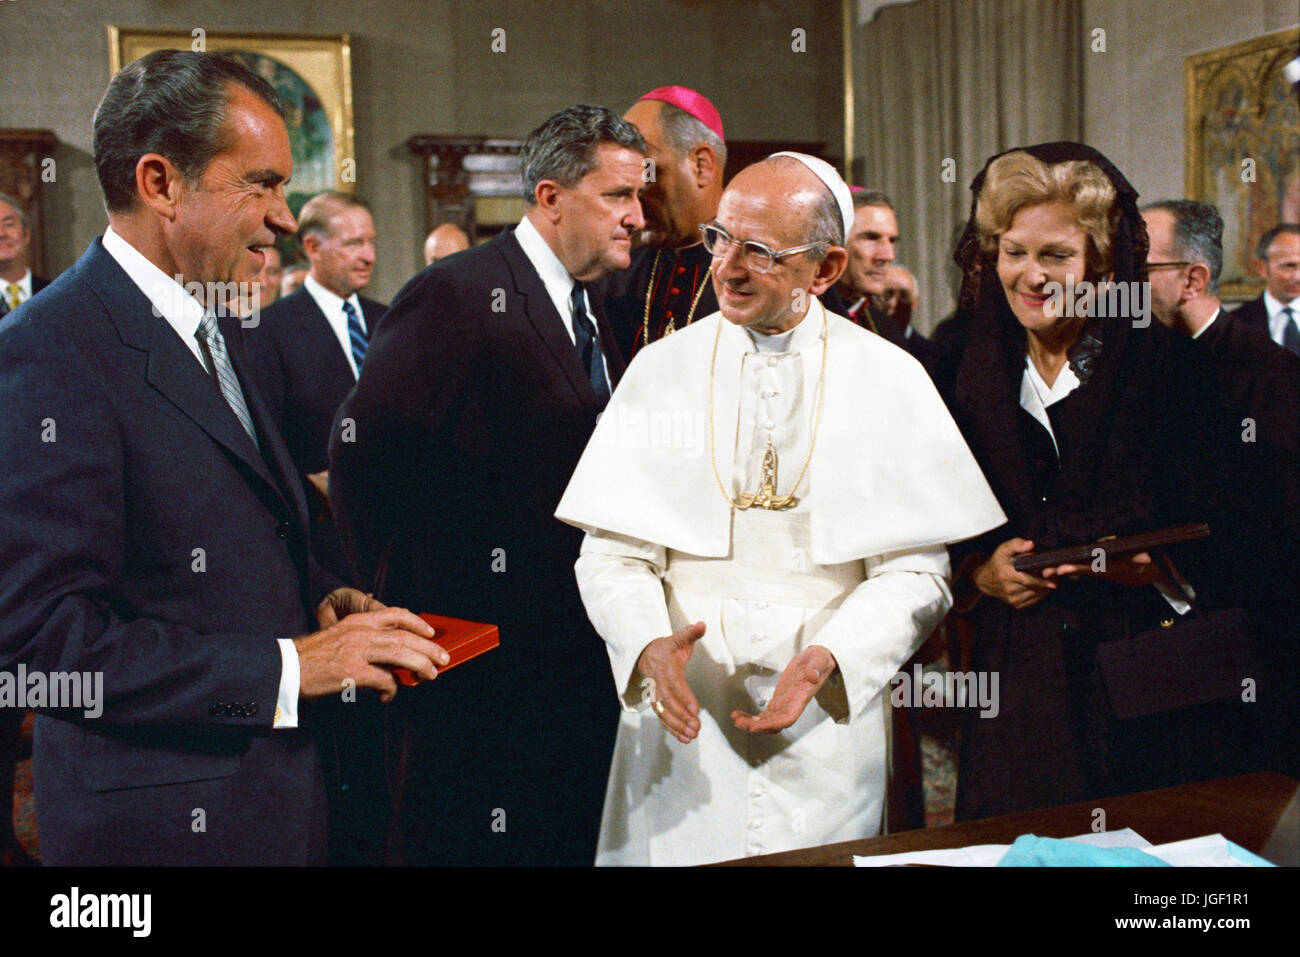 el-presidente-nixon-se-reune-el-papa-pablo-vi-en-el-vaticano-jgf1r1.jpg